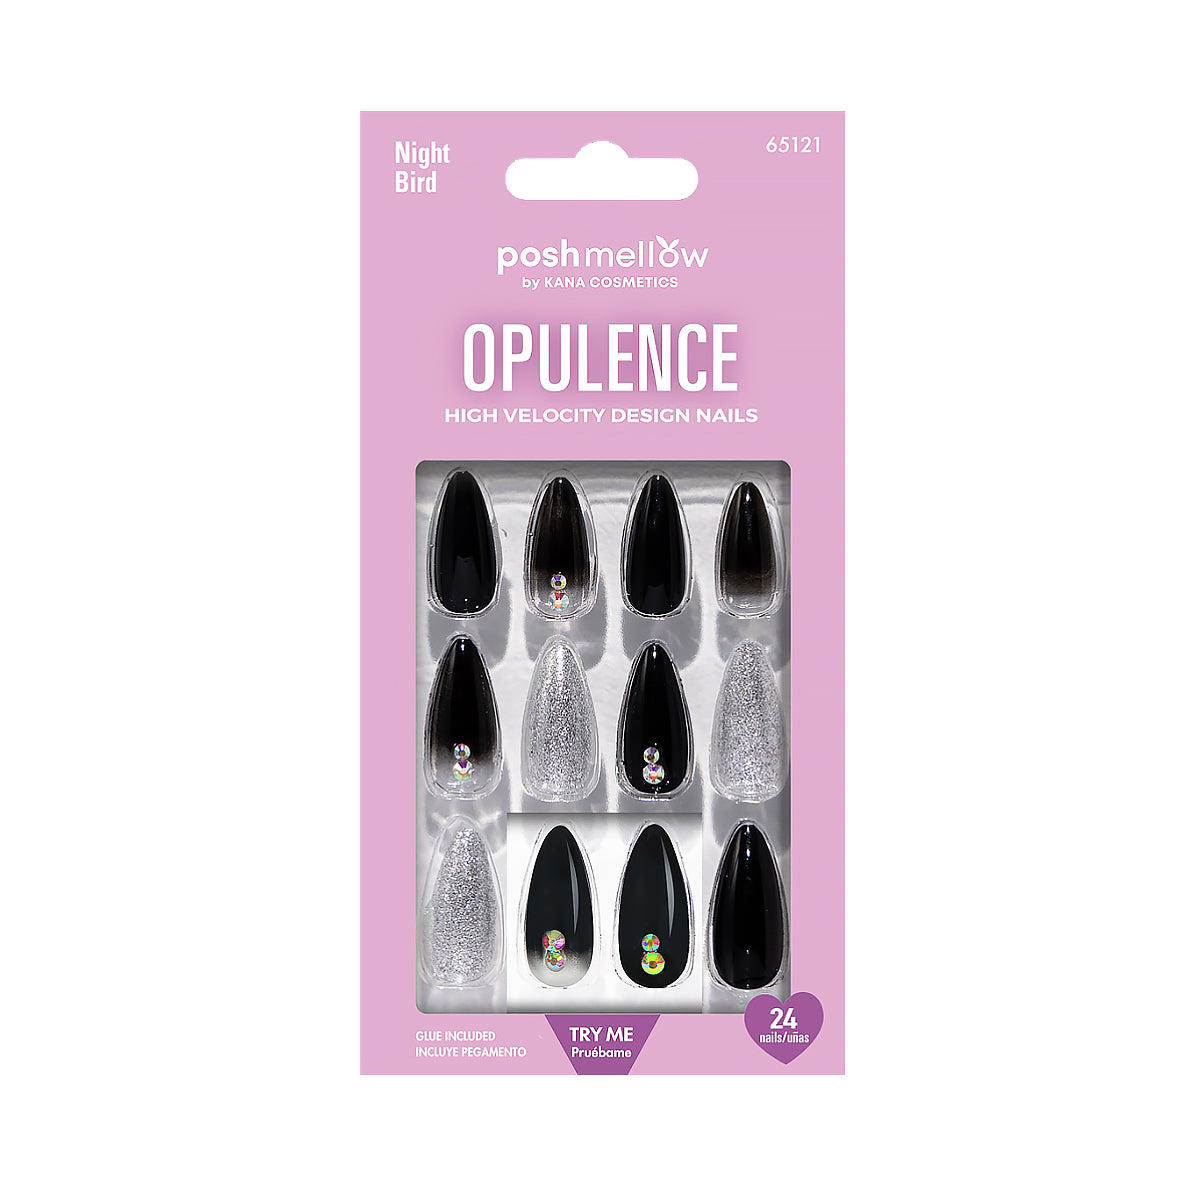 Opulence Night Bird Almond Shaped Nails